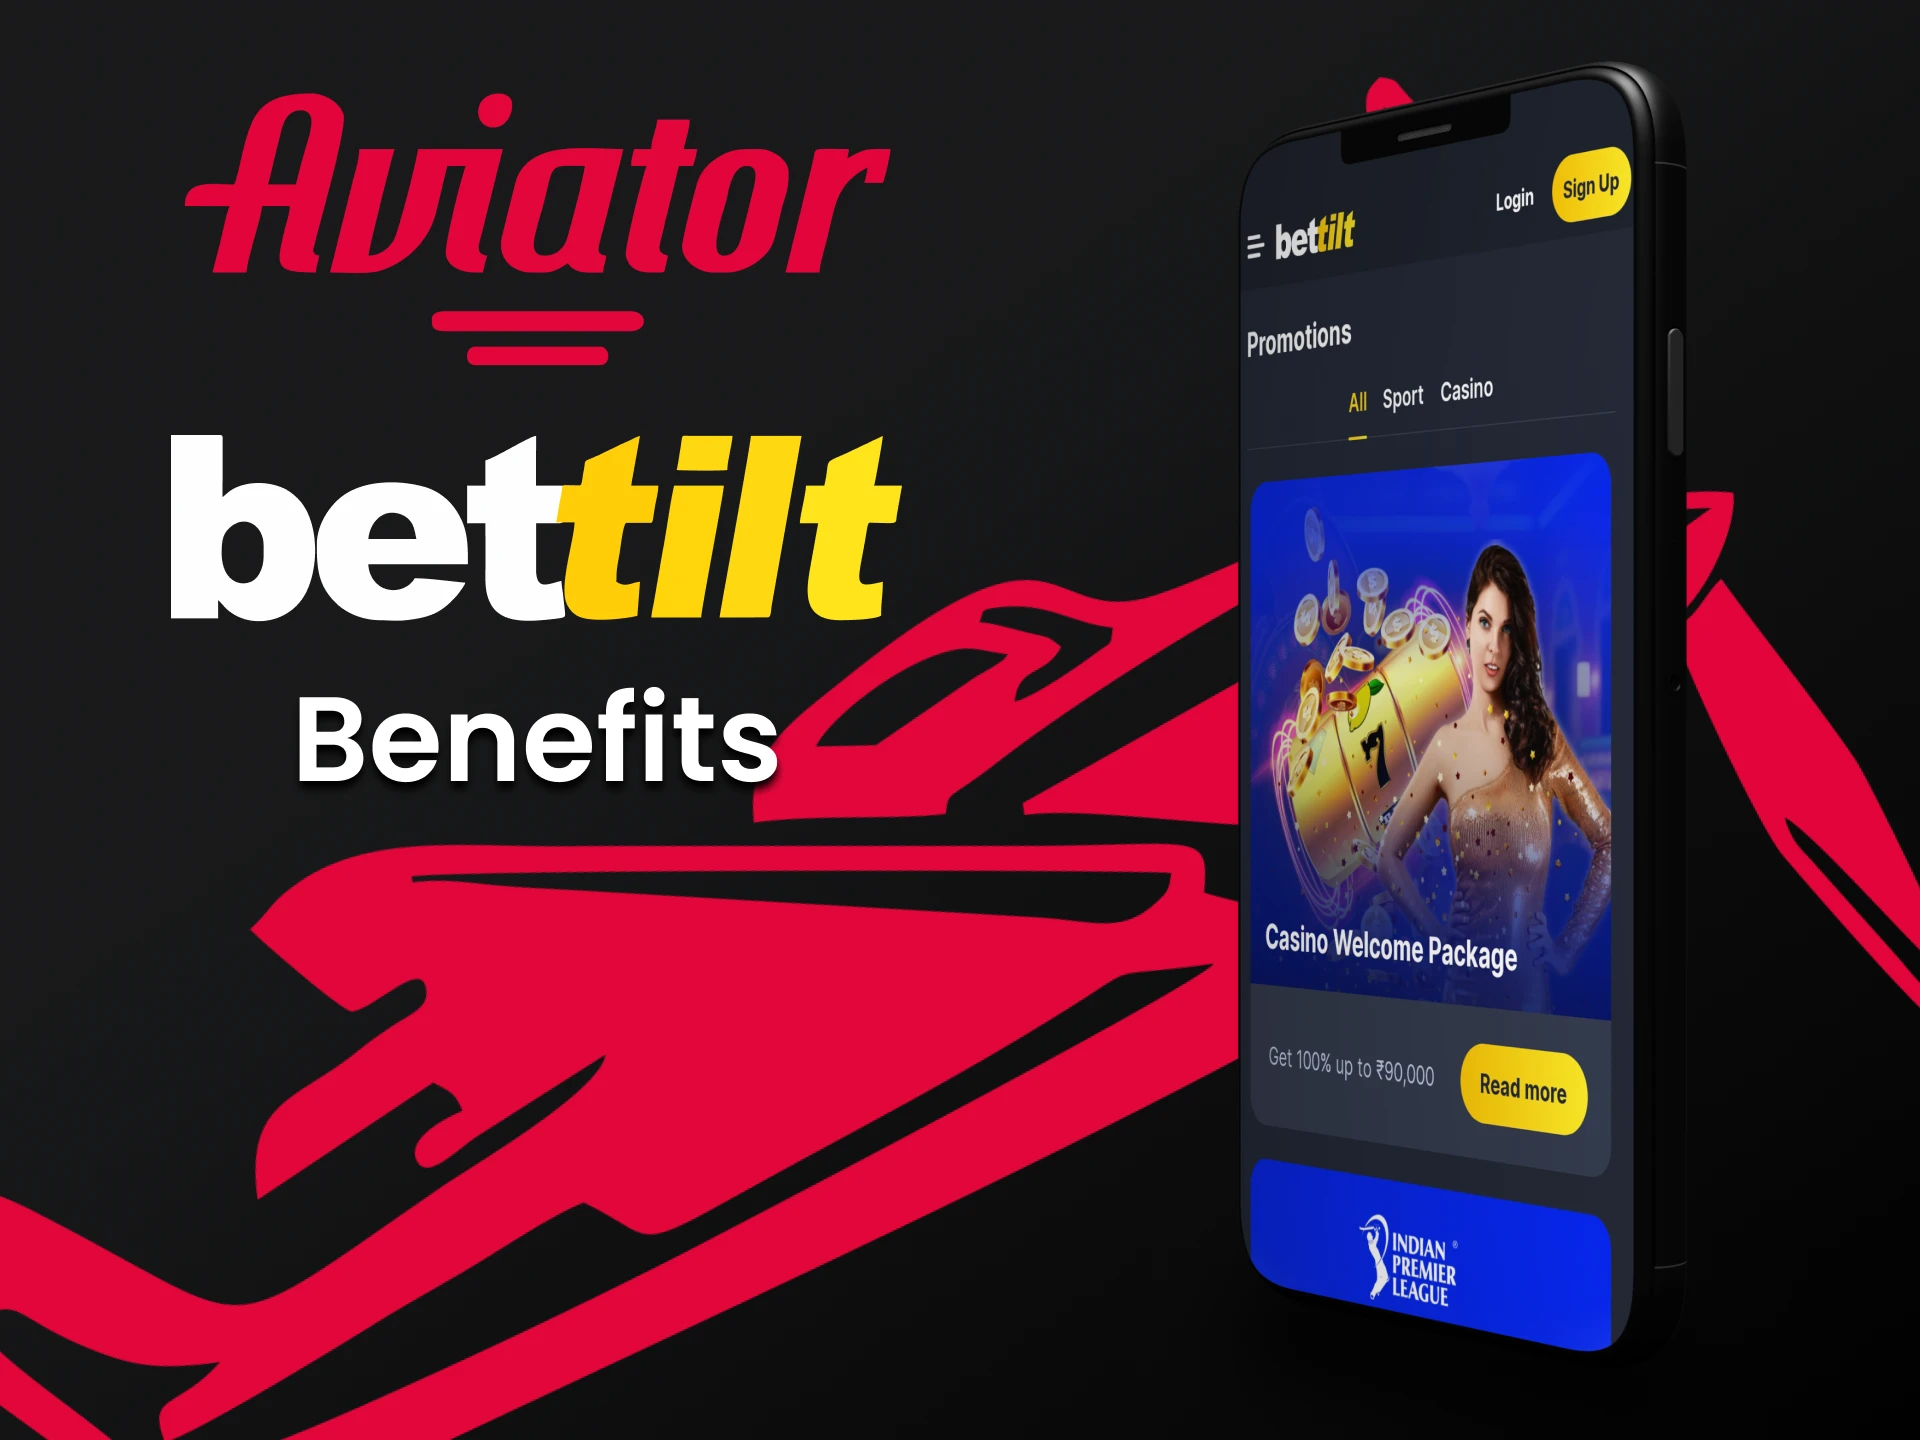 Descubra as formas de transações por meio do aplicativo Bettilt para o jogo Aviator.